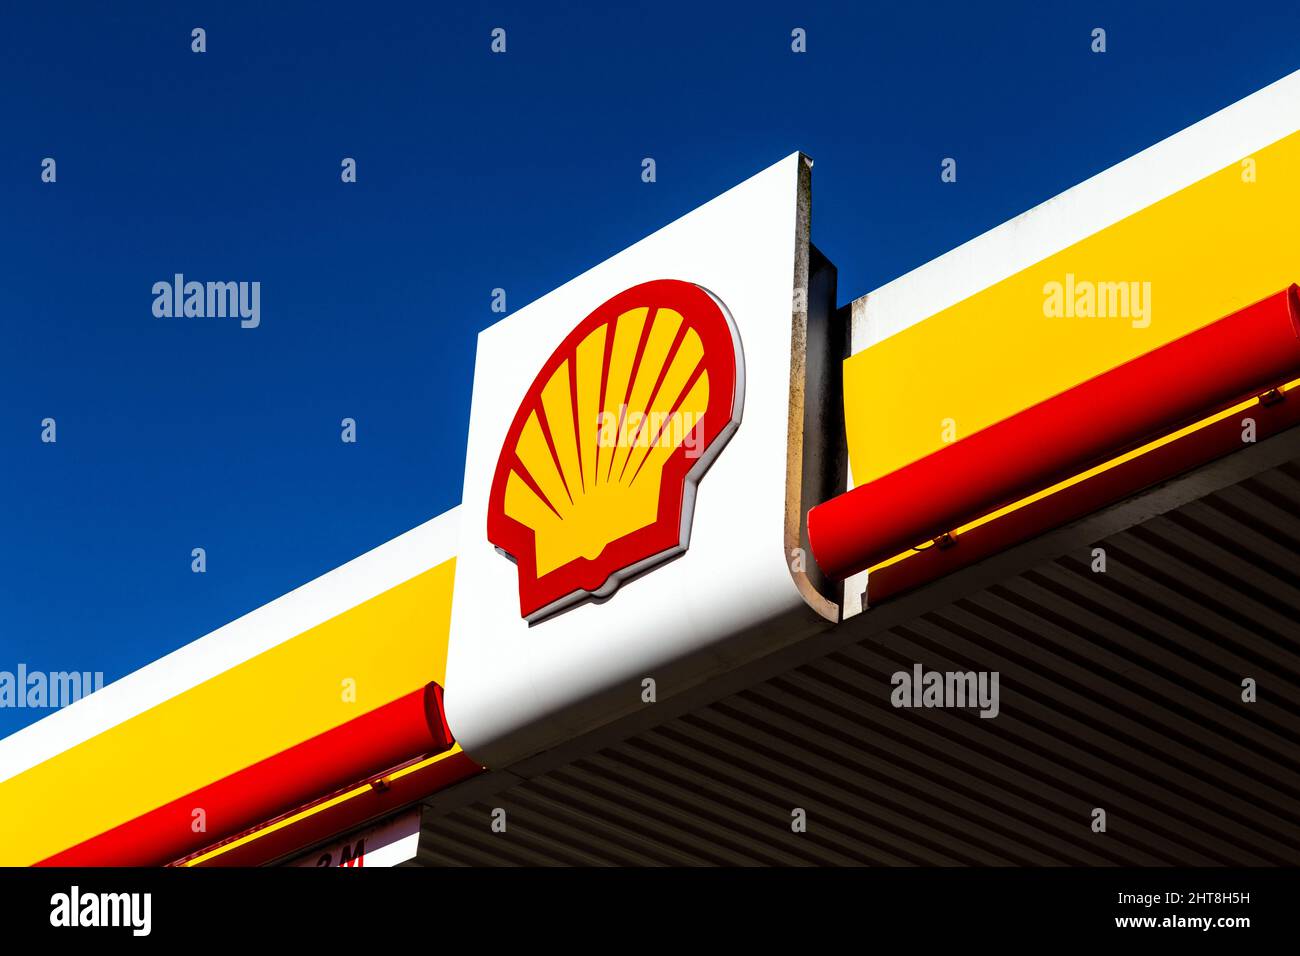 Primo piano del logo dell'azienda petrolifera Shell presso uno dei distributori di benzina Foto Stock